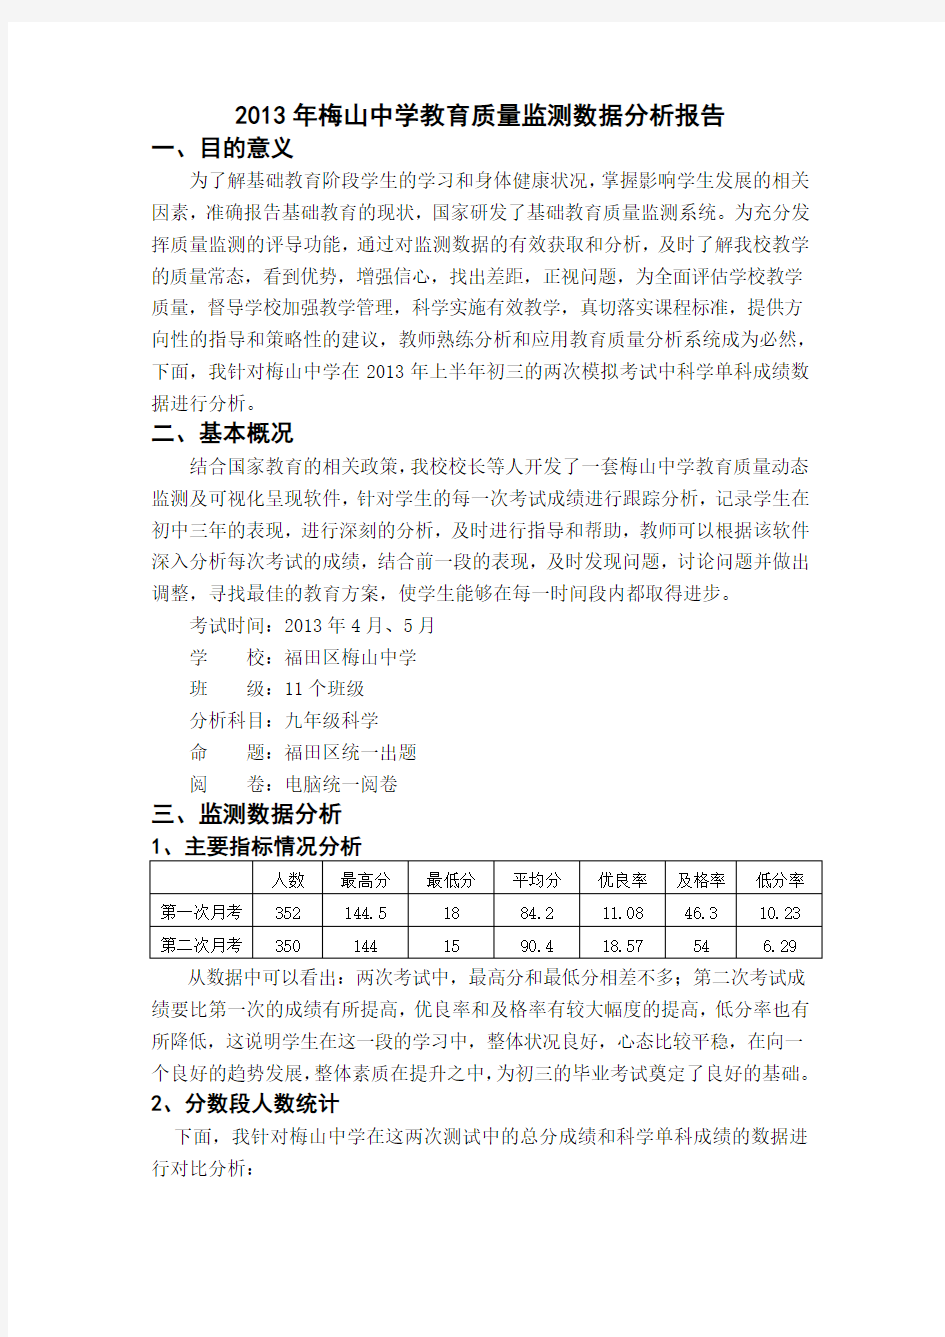 教育质量监测数据分析报告梅山中学李兆坤